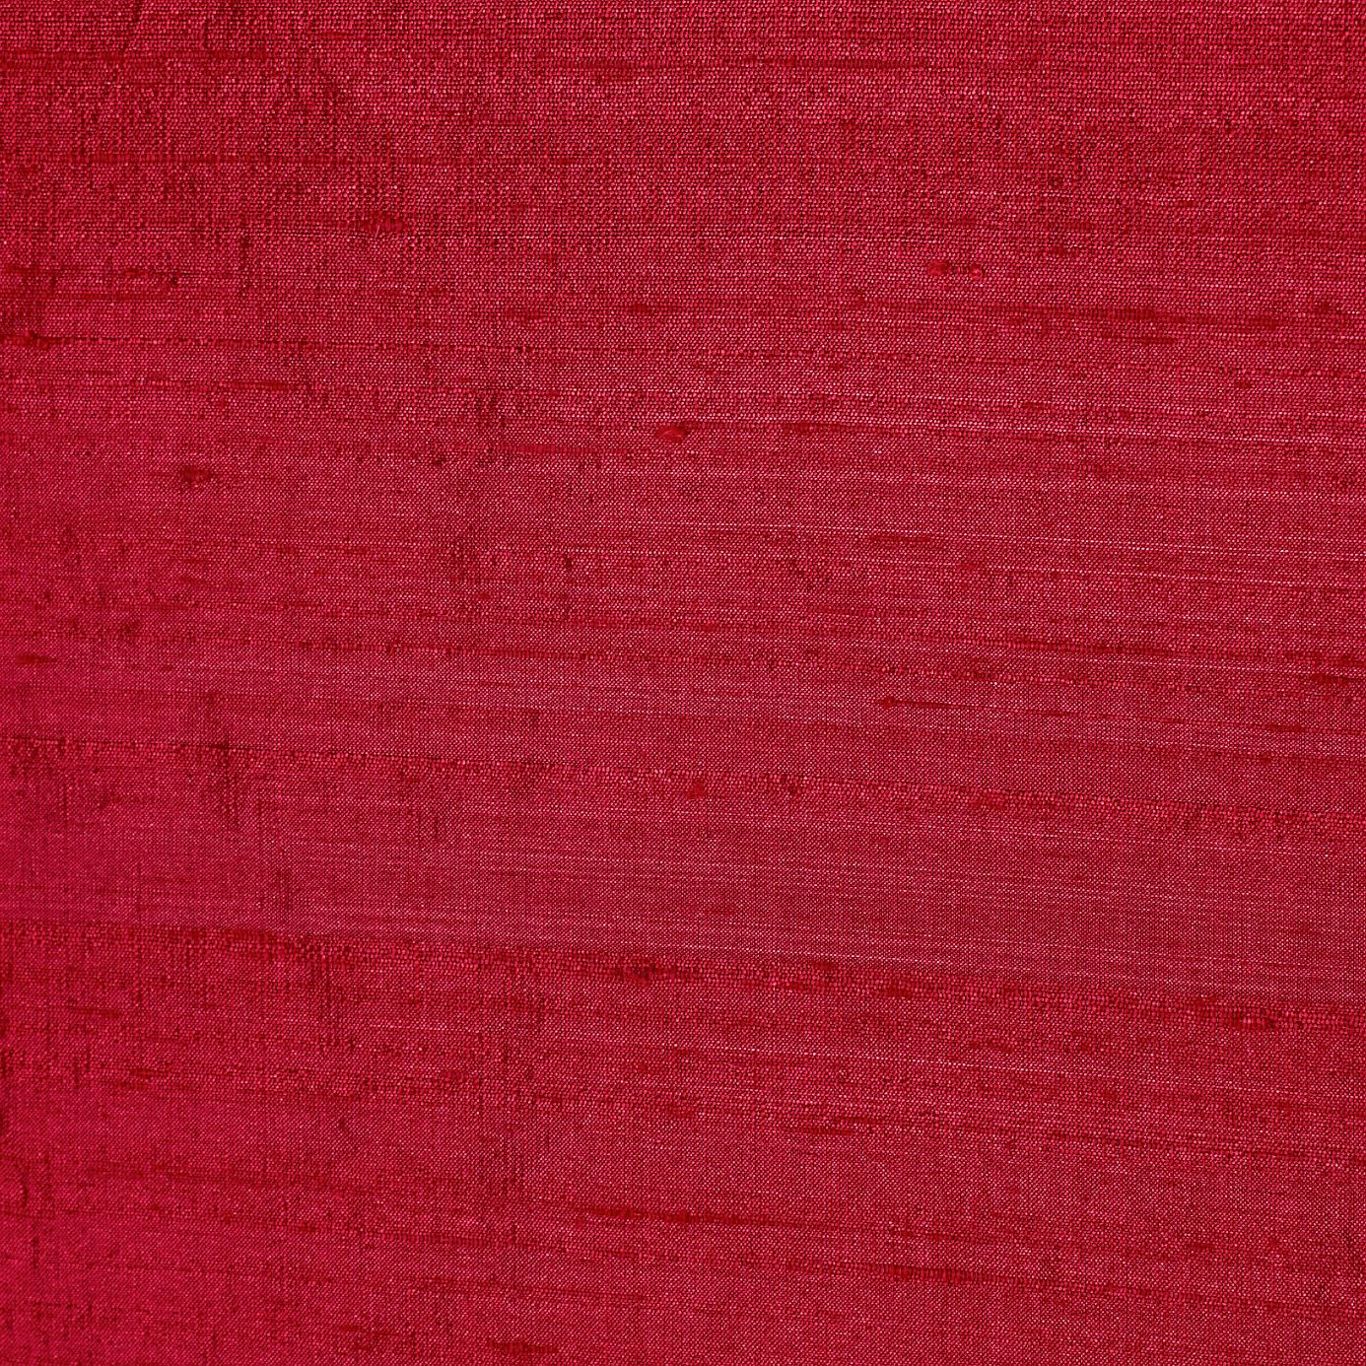 Lilaea Silks Scarlet Fabric by HAR